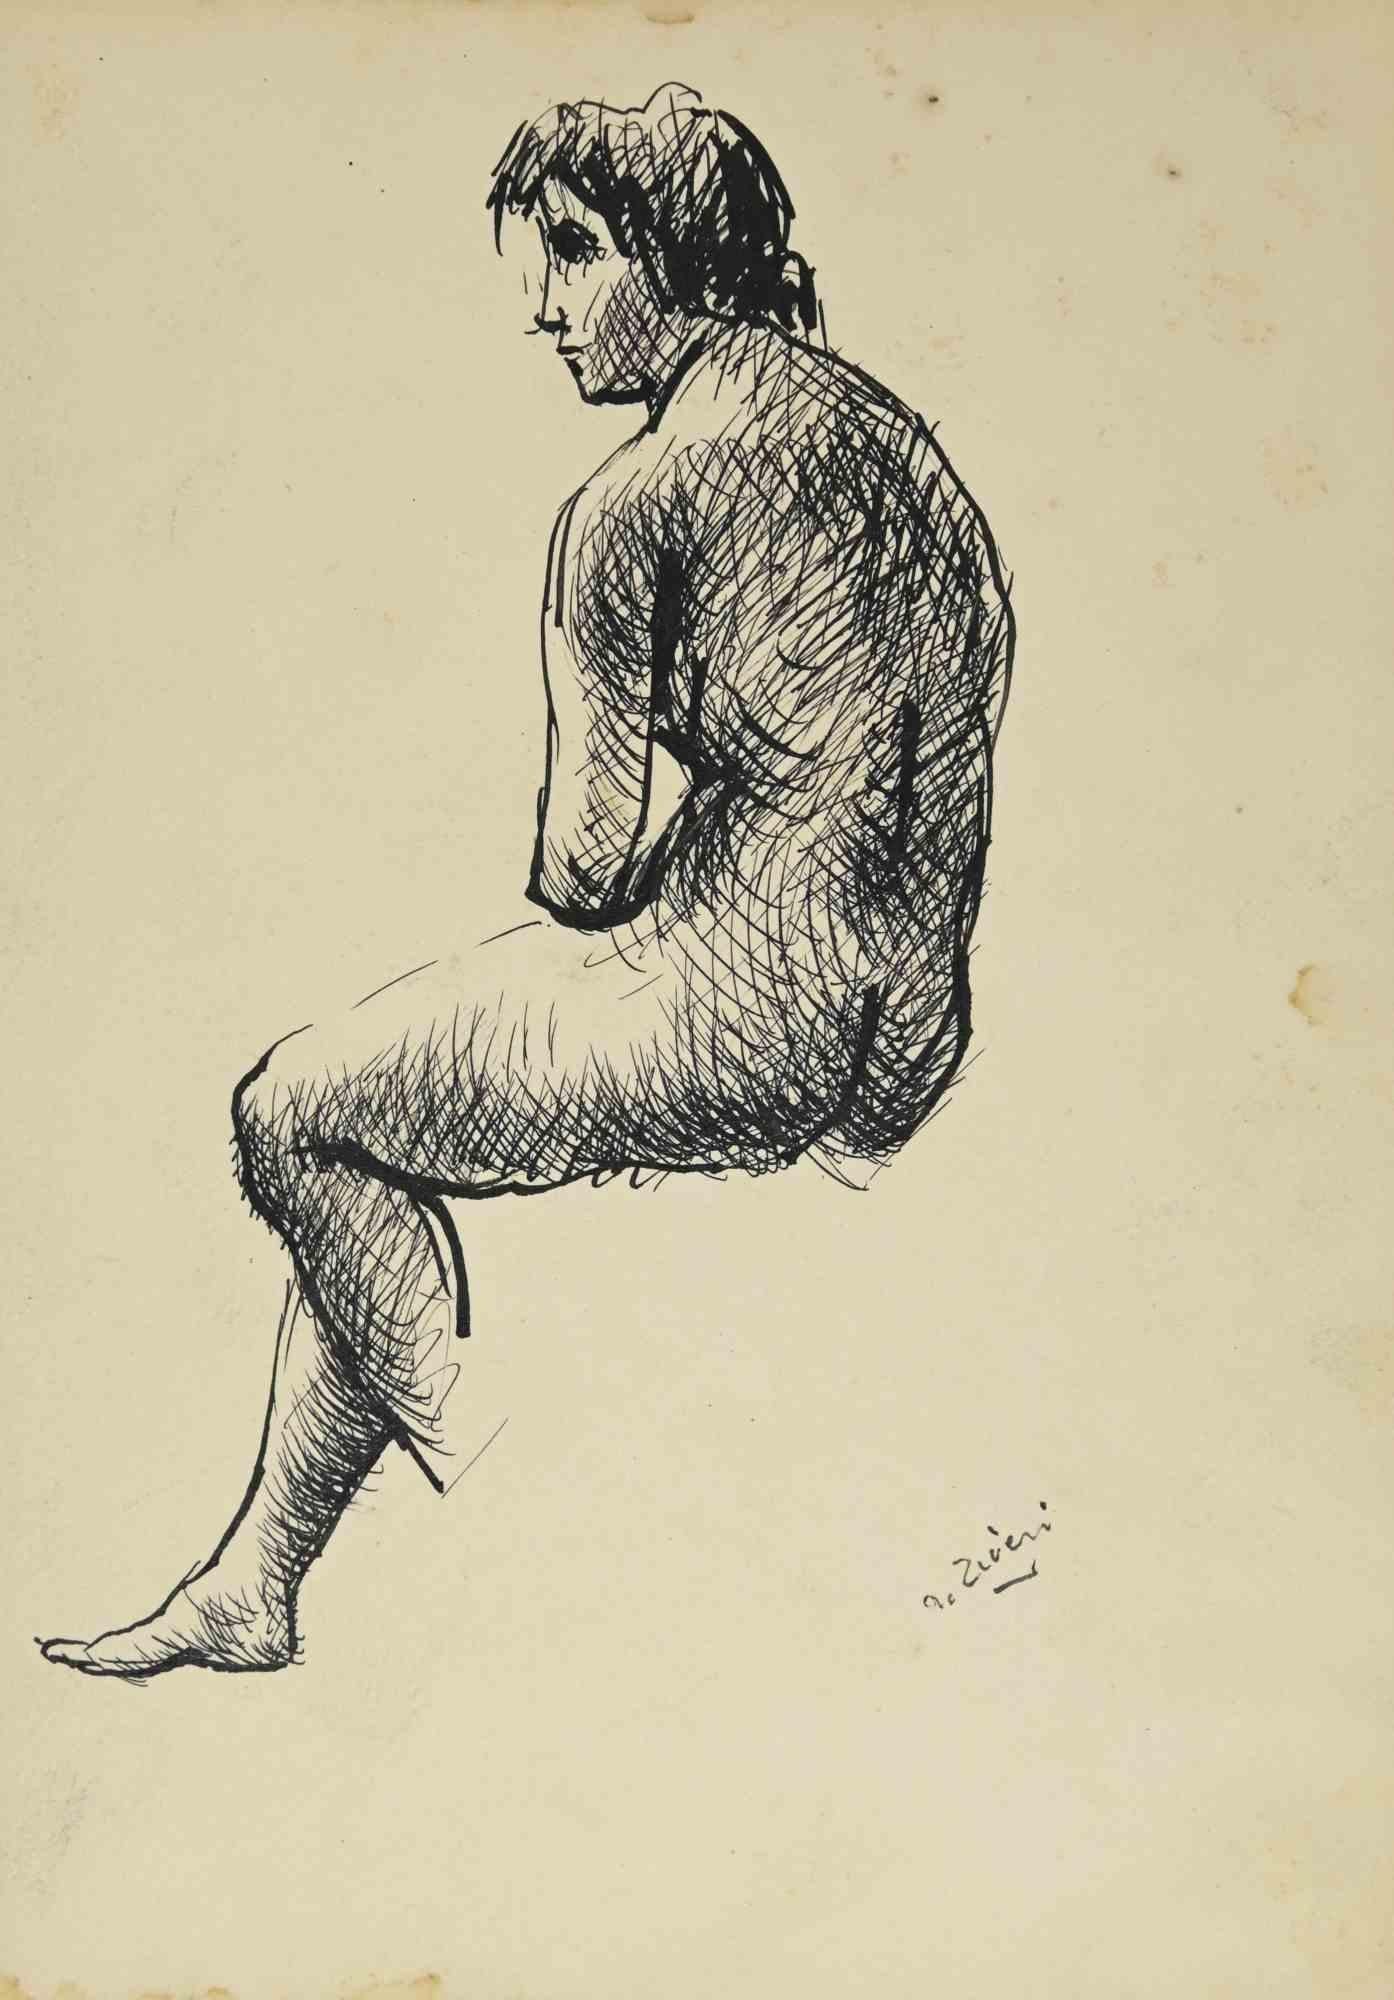 Das Porträt ist eine Zeichnung von Alberto Ziveri aus den 1930er Jahren.

Tinte auf Papier.

Handsigniert.

In gutem Zustand.

Das Kunstwerk wird durch geschickte Striche meisterhaft dargestellt.

Alberto Ziveri (Rom, 1908 - 1990), der italienische